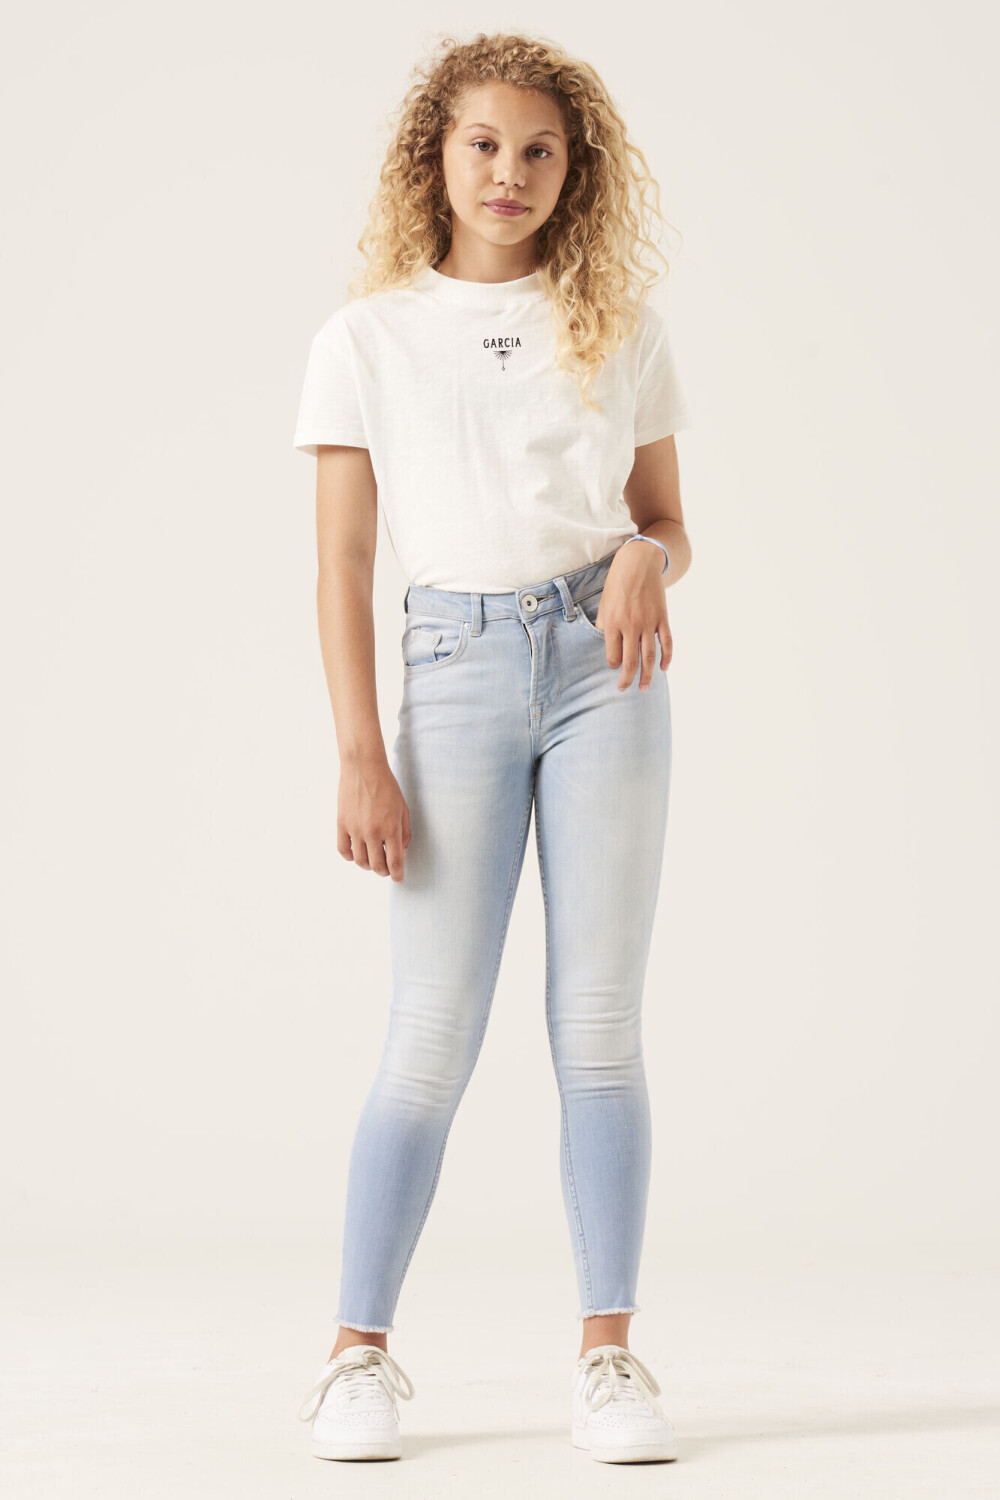 Preisvergleich Garcia | Rianna 25,06 ab bei Jeans (570-3728) 570 € bleached